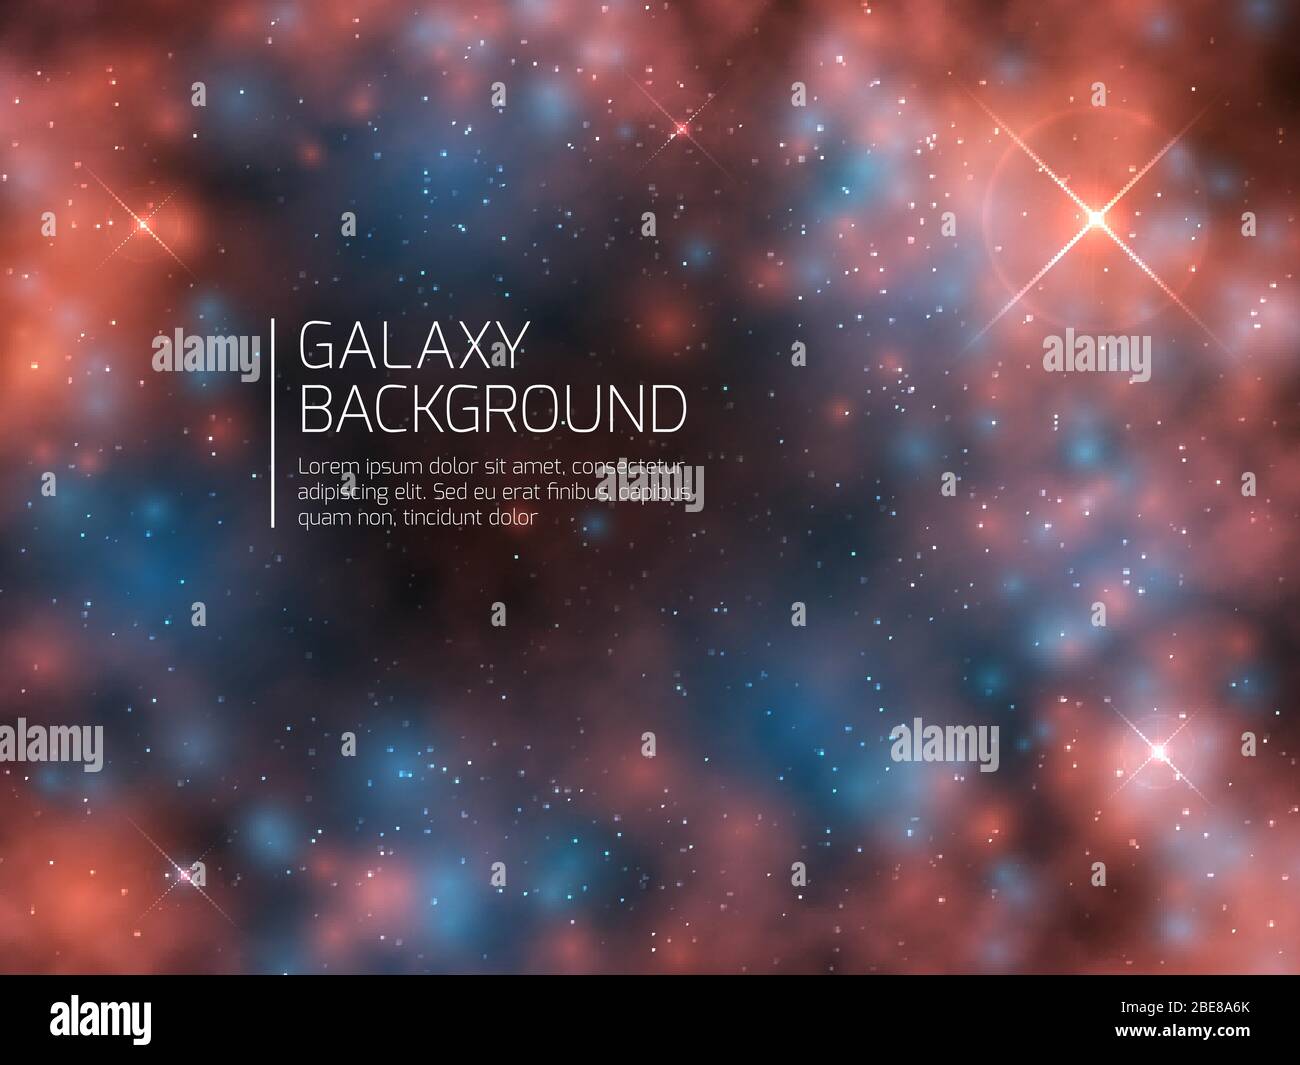 Galaxie de l'univers et étoiles de nuit. Arrière-plan vectoriel abstrait supernova mystique COSMOS. Illustration du ciel nocturne de la constellation astrale nébuleuse Illustration de Vecteur